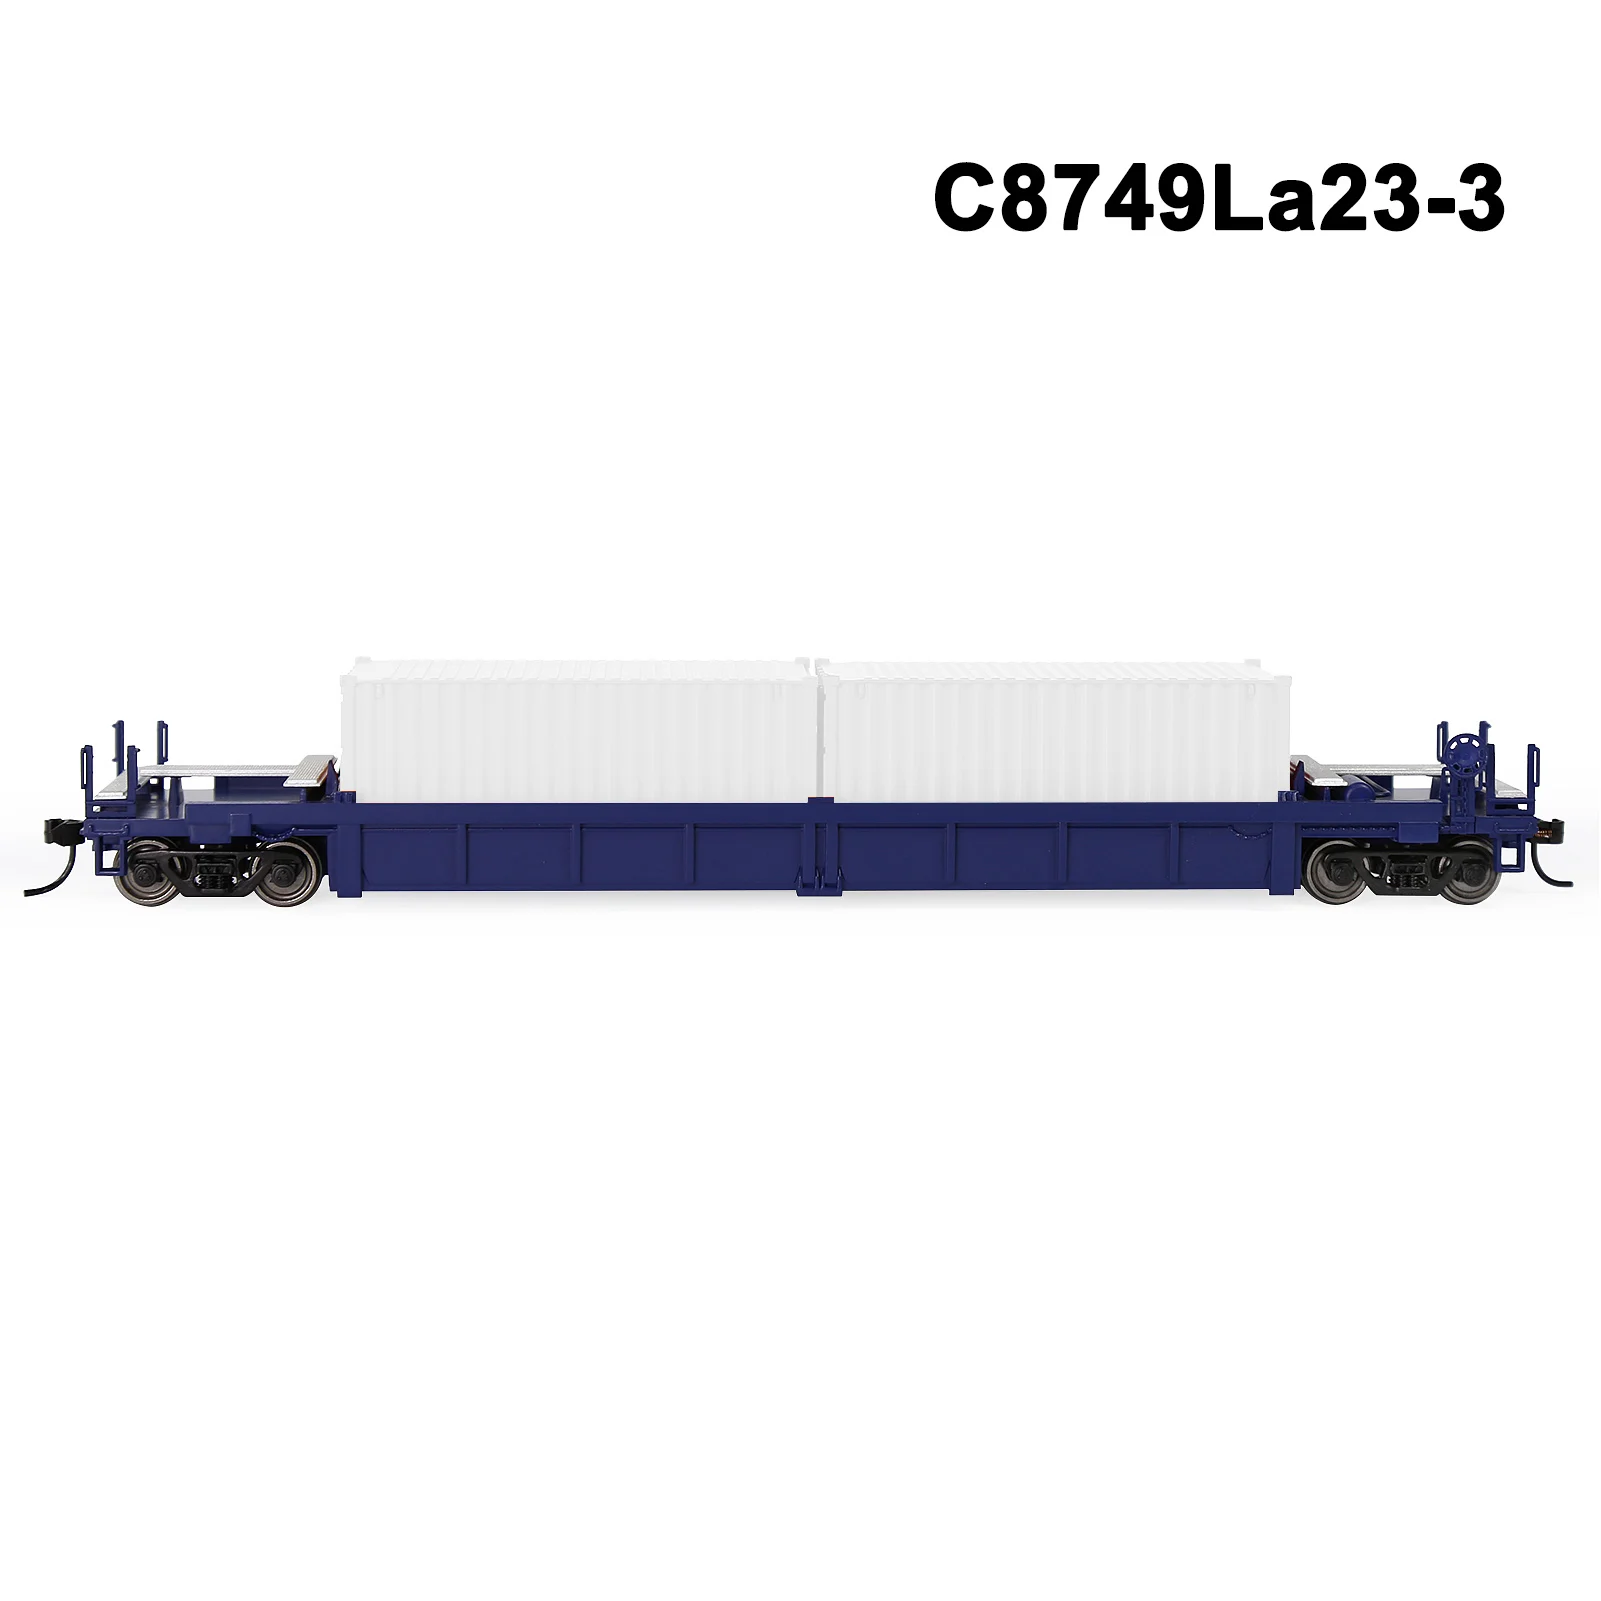 C8749La23-3